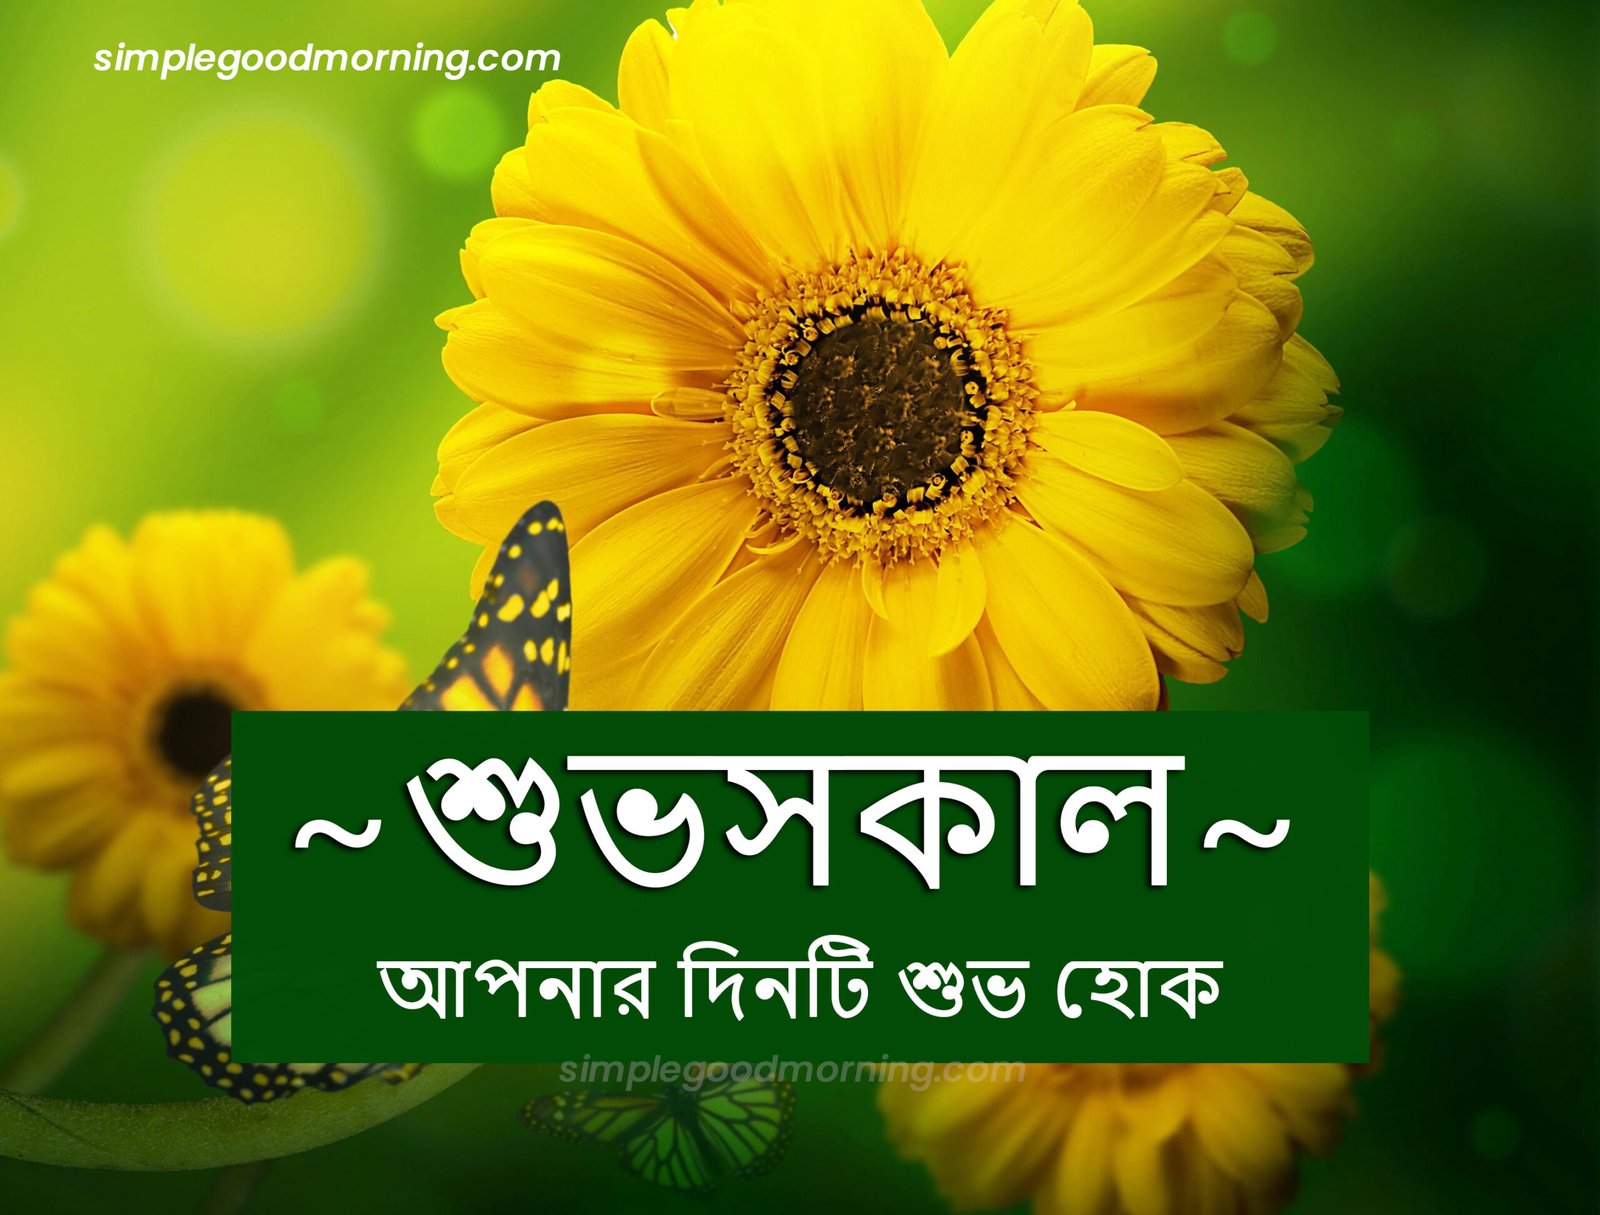 Bengali Morning Greetings